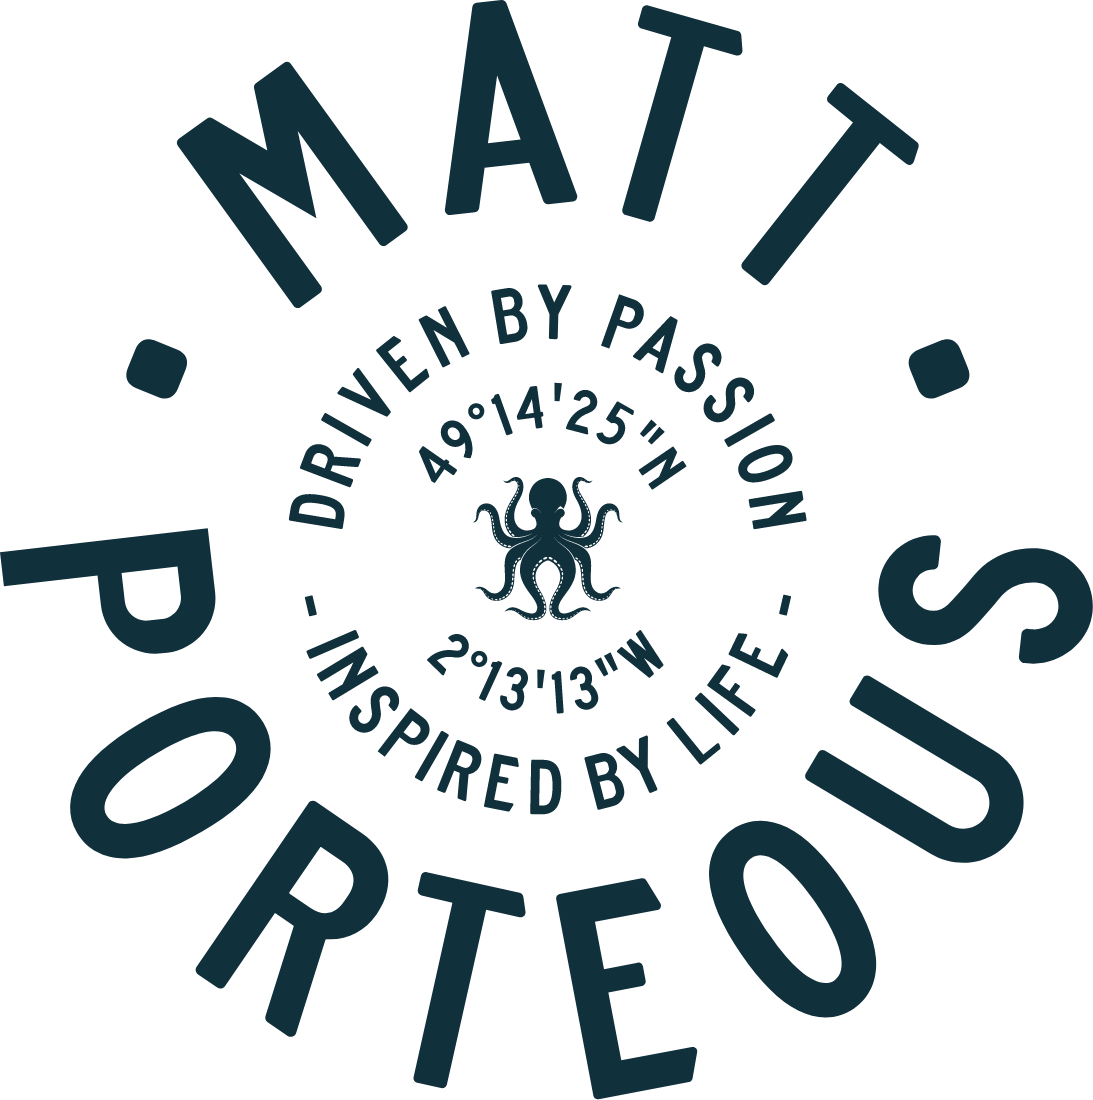 Matt Porteous